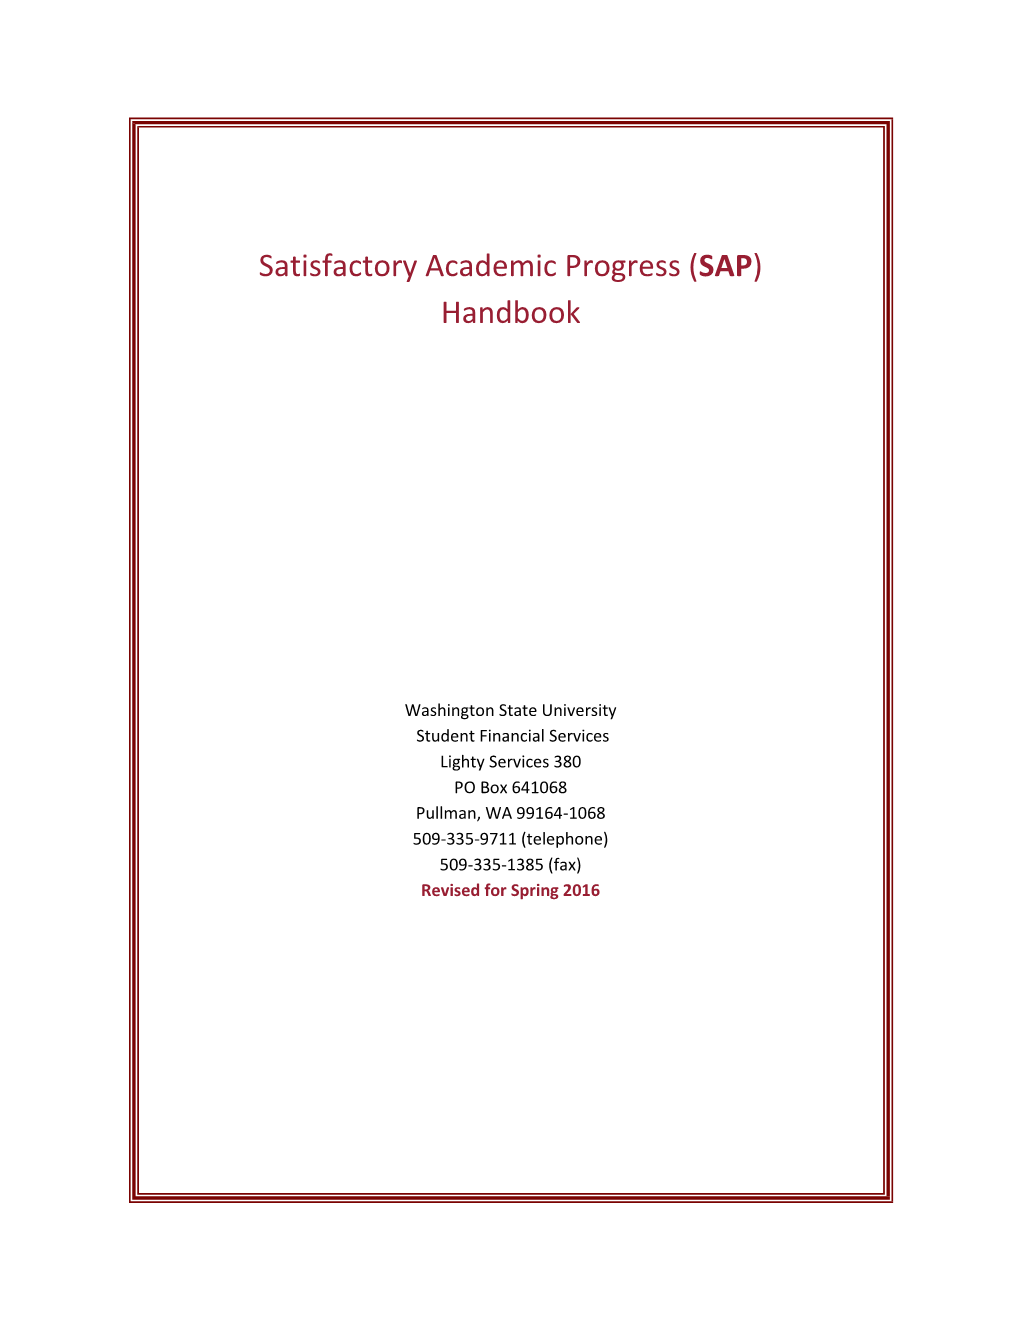 Satisfactory Academic Progress (SAP) Handbook